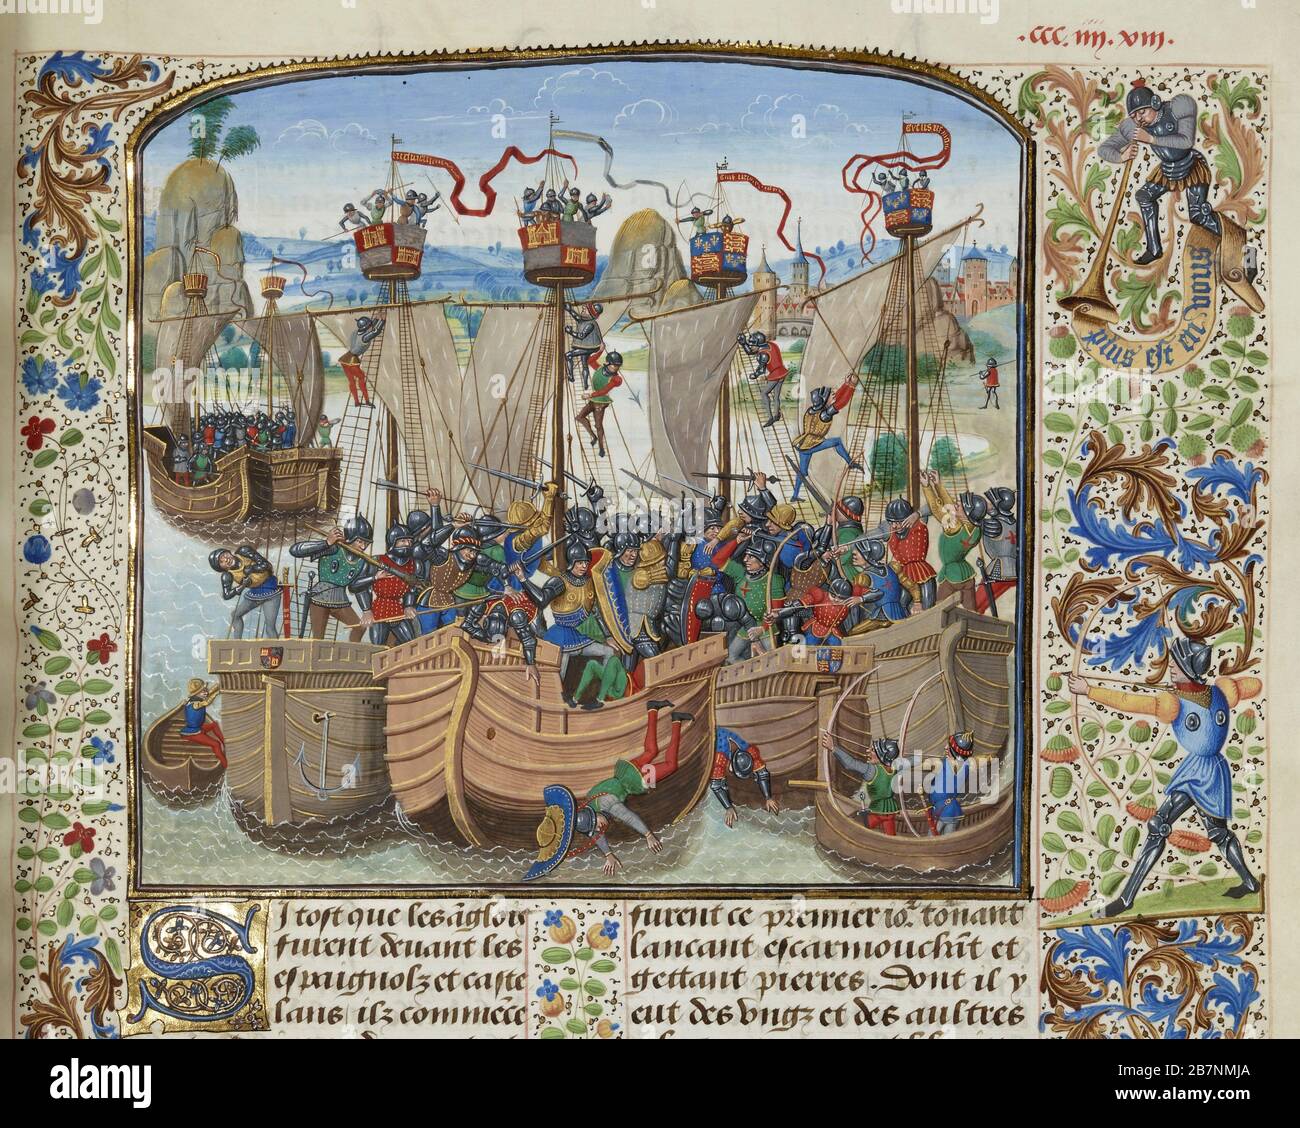 La battaglia di la Rochelle, 1372 (miniatura delle Grandes Chroniques de France di Jean Froissart), ca 1470-1475. Trovato nella Collezione di Biblioth&.xe8;que Nationale de France. Foto Stock